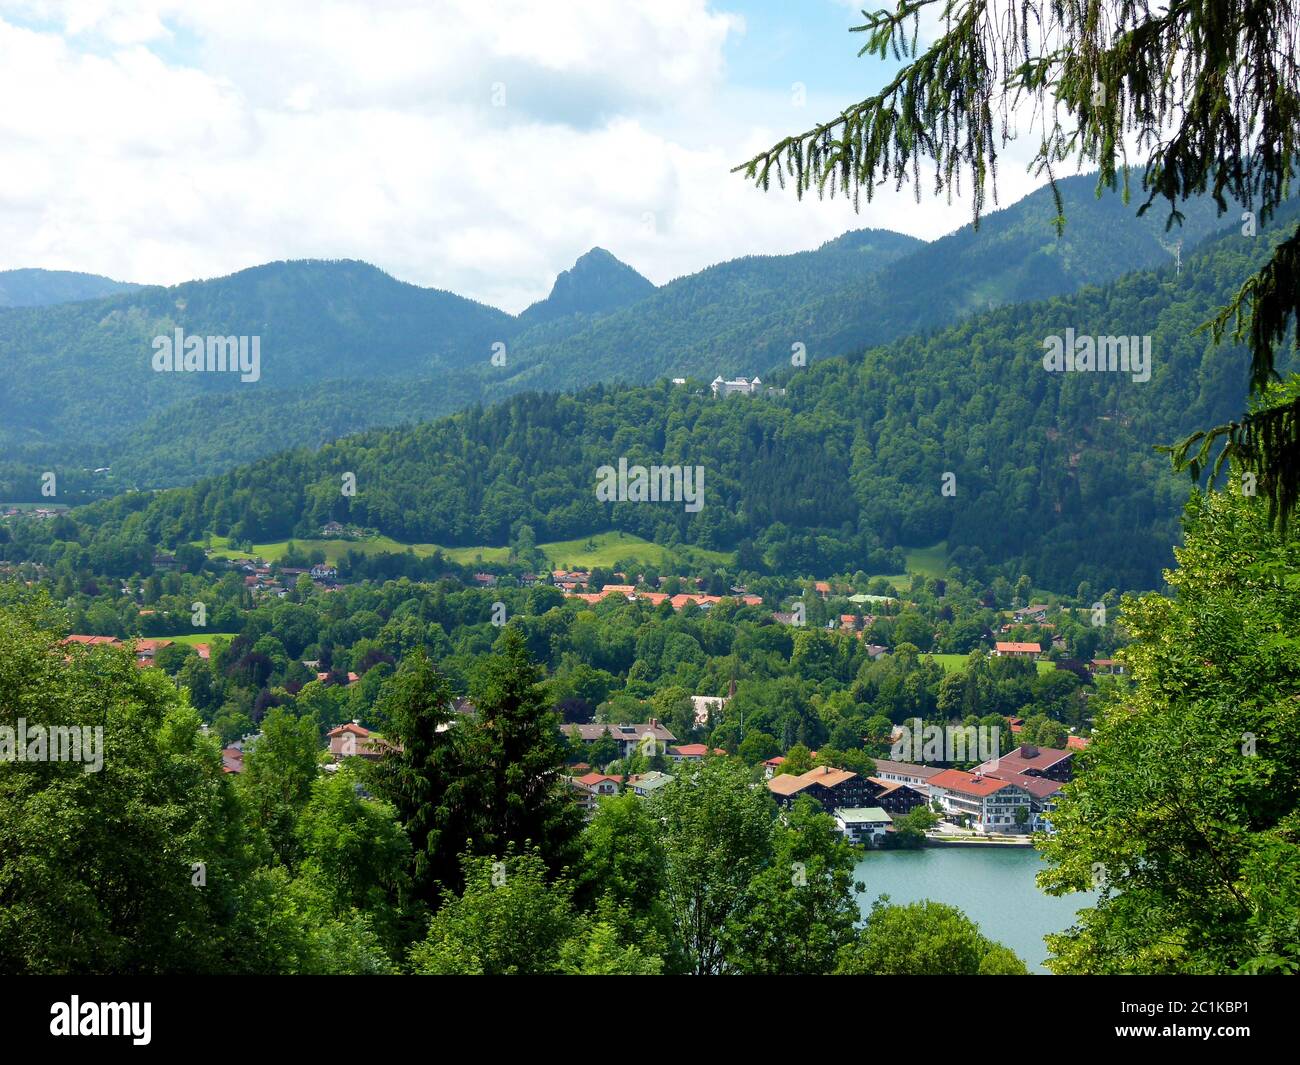 Idyllische Landschaft in Süddeutschland mit Bergen - Wald - Bergsee und Dorf Stockfoto